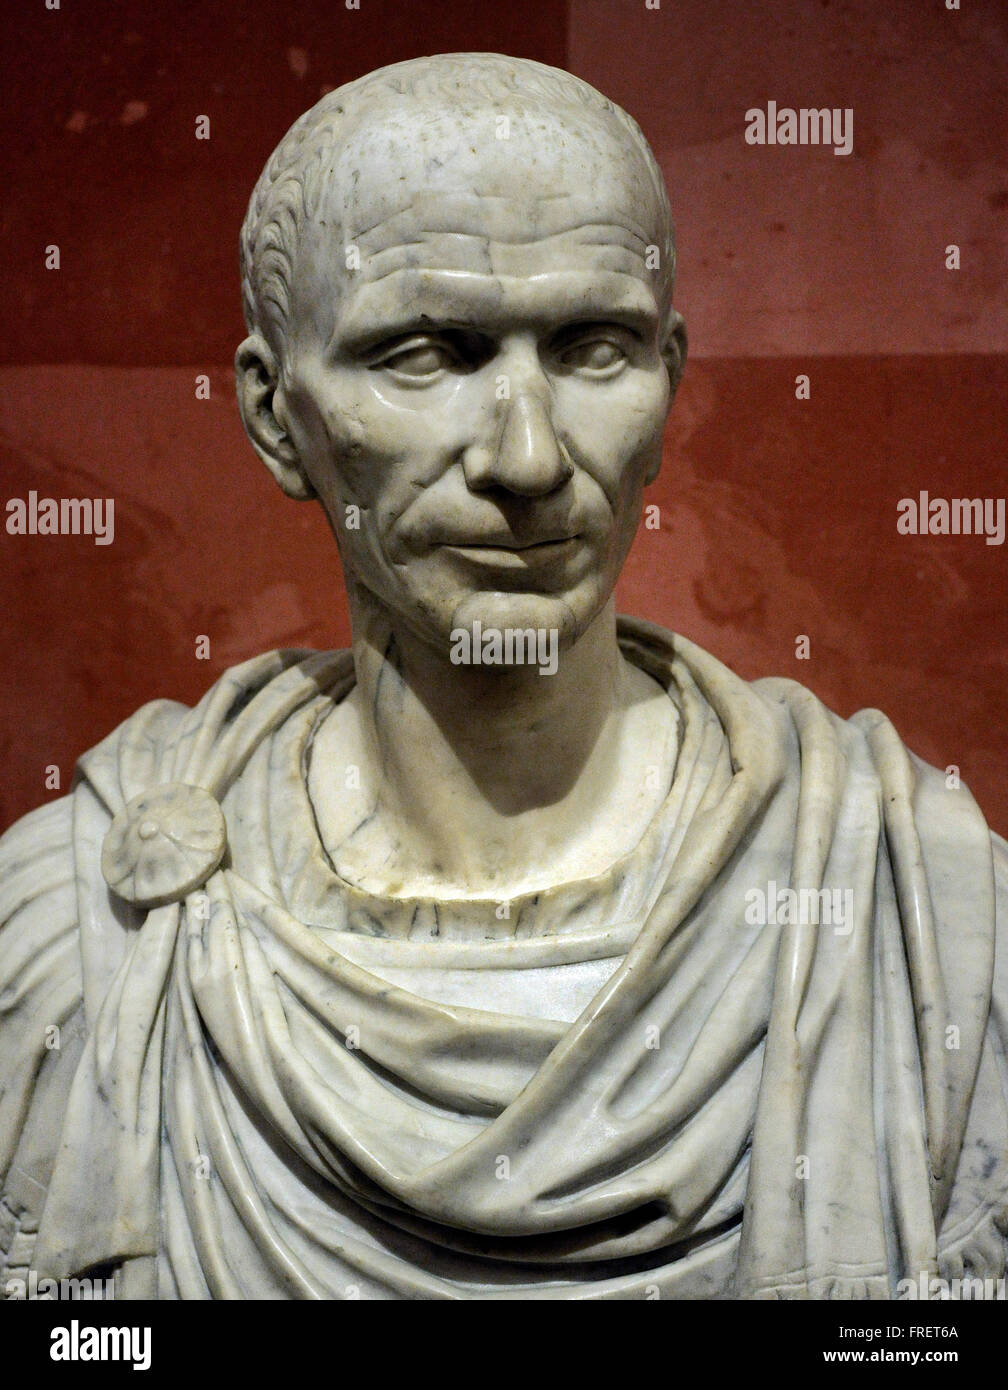 julio cesar roman emperor